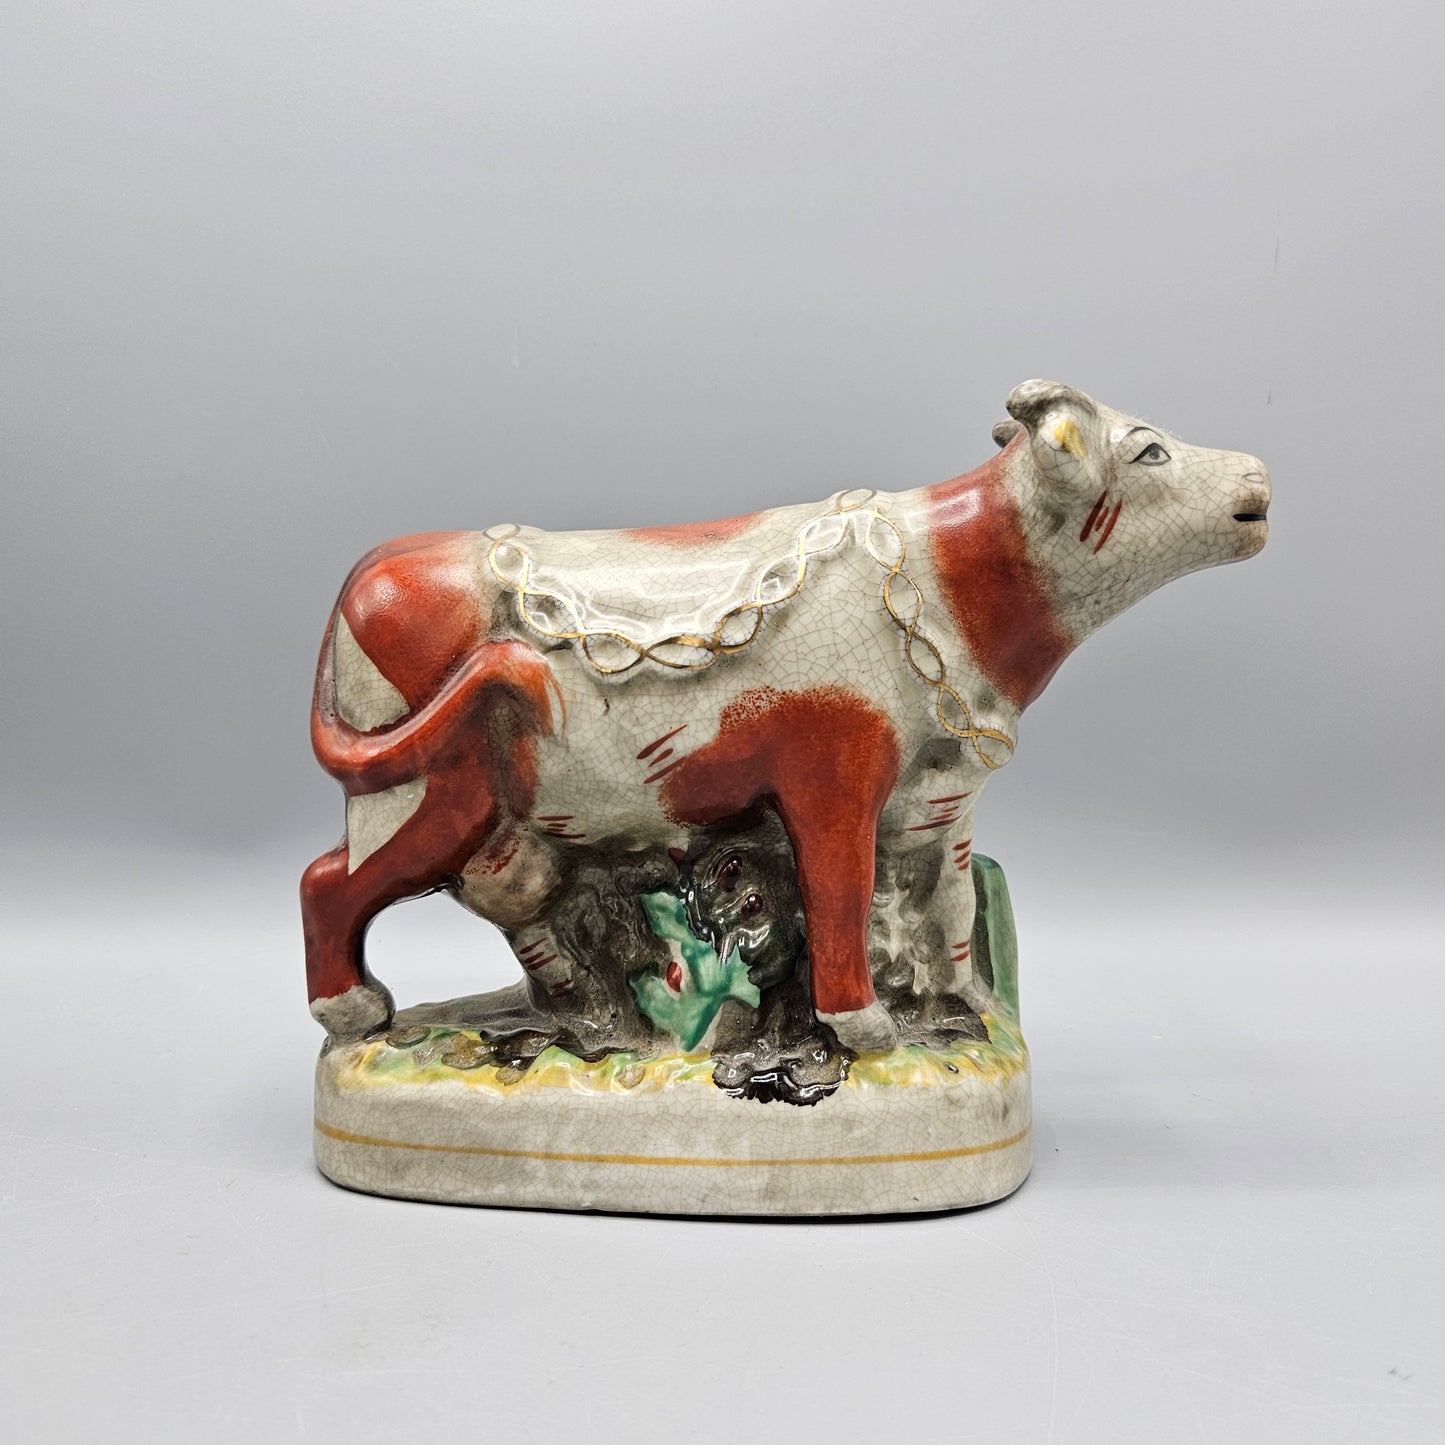 Contemporary Staffordshire Cow Figurine